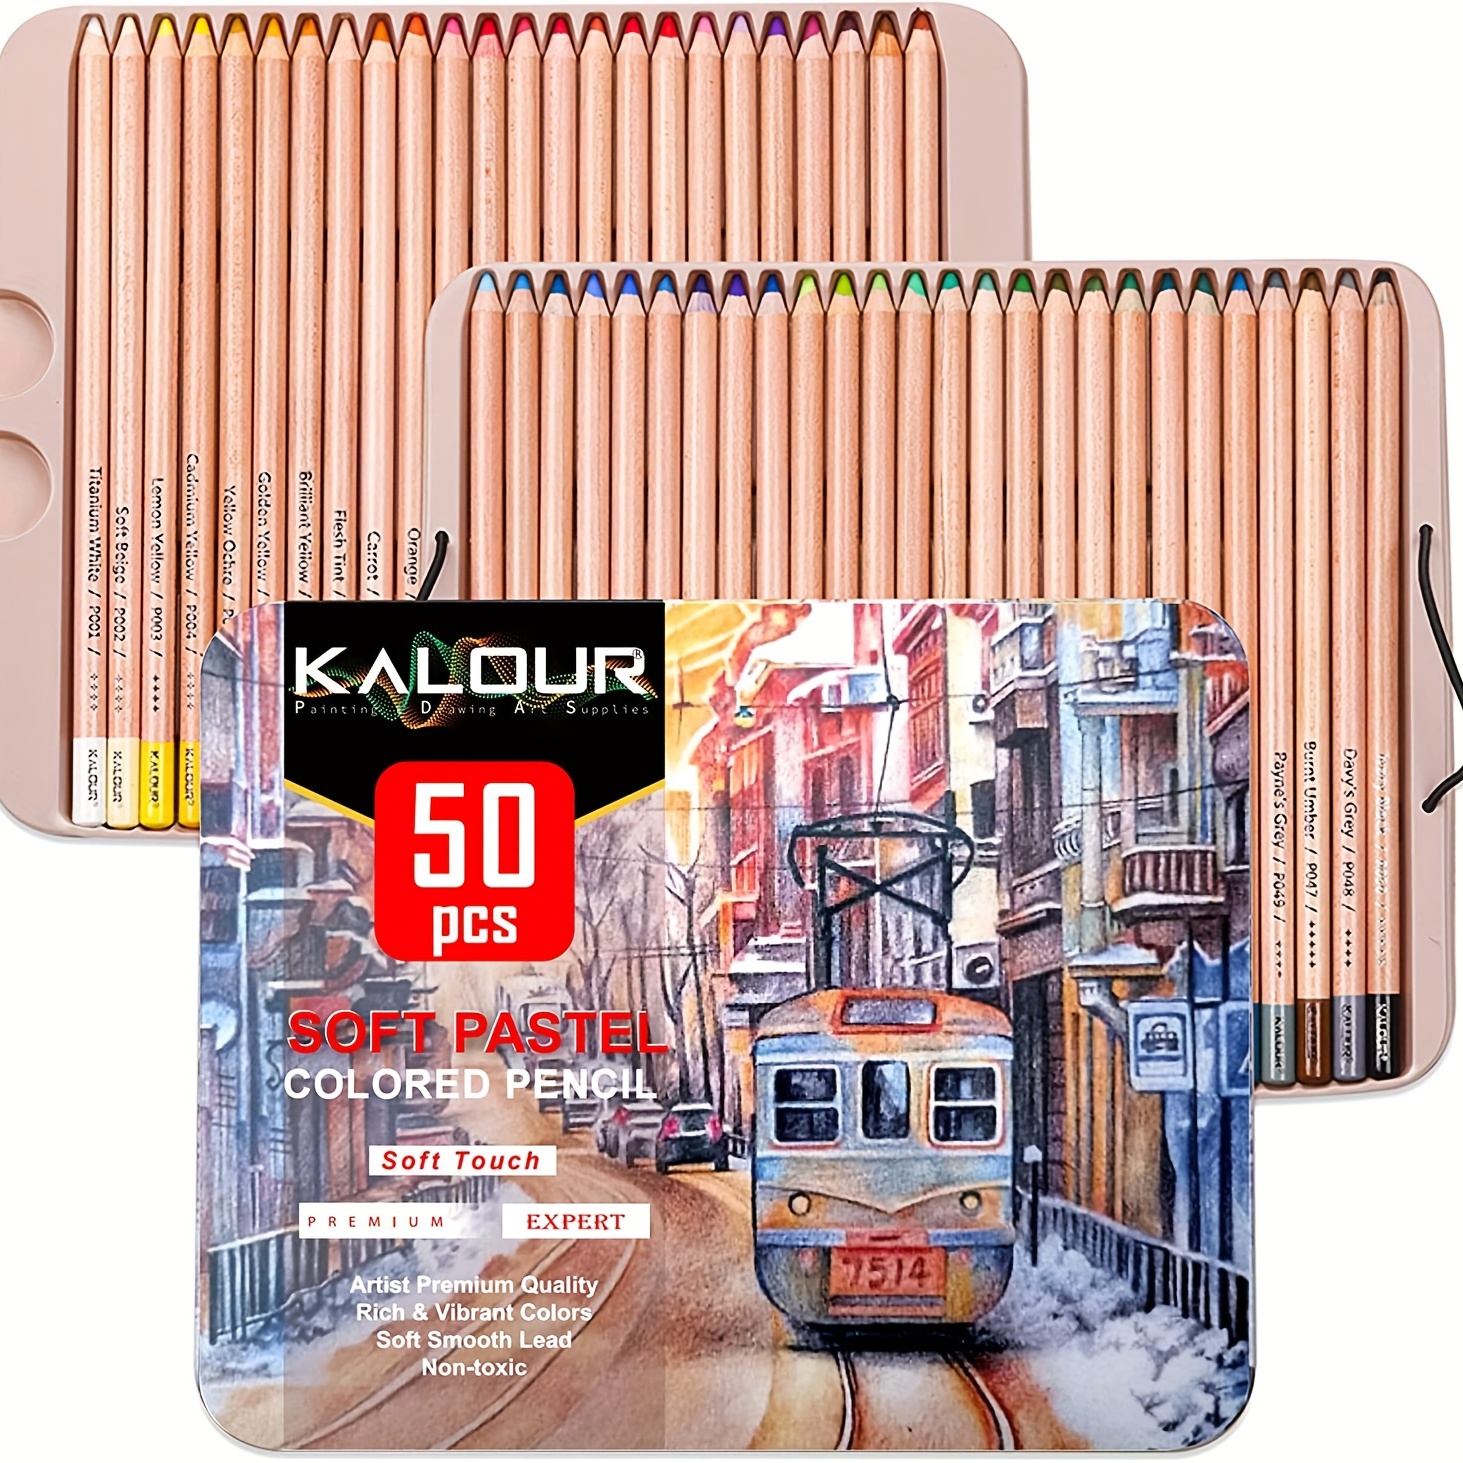 KALOUR Professional Colored Pencils,Set of 120 Colors